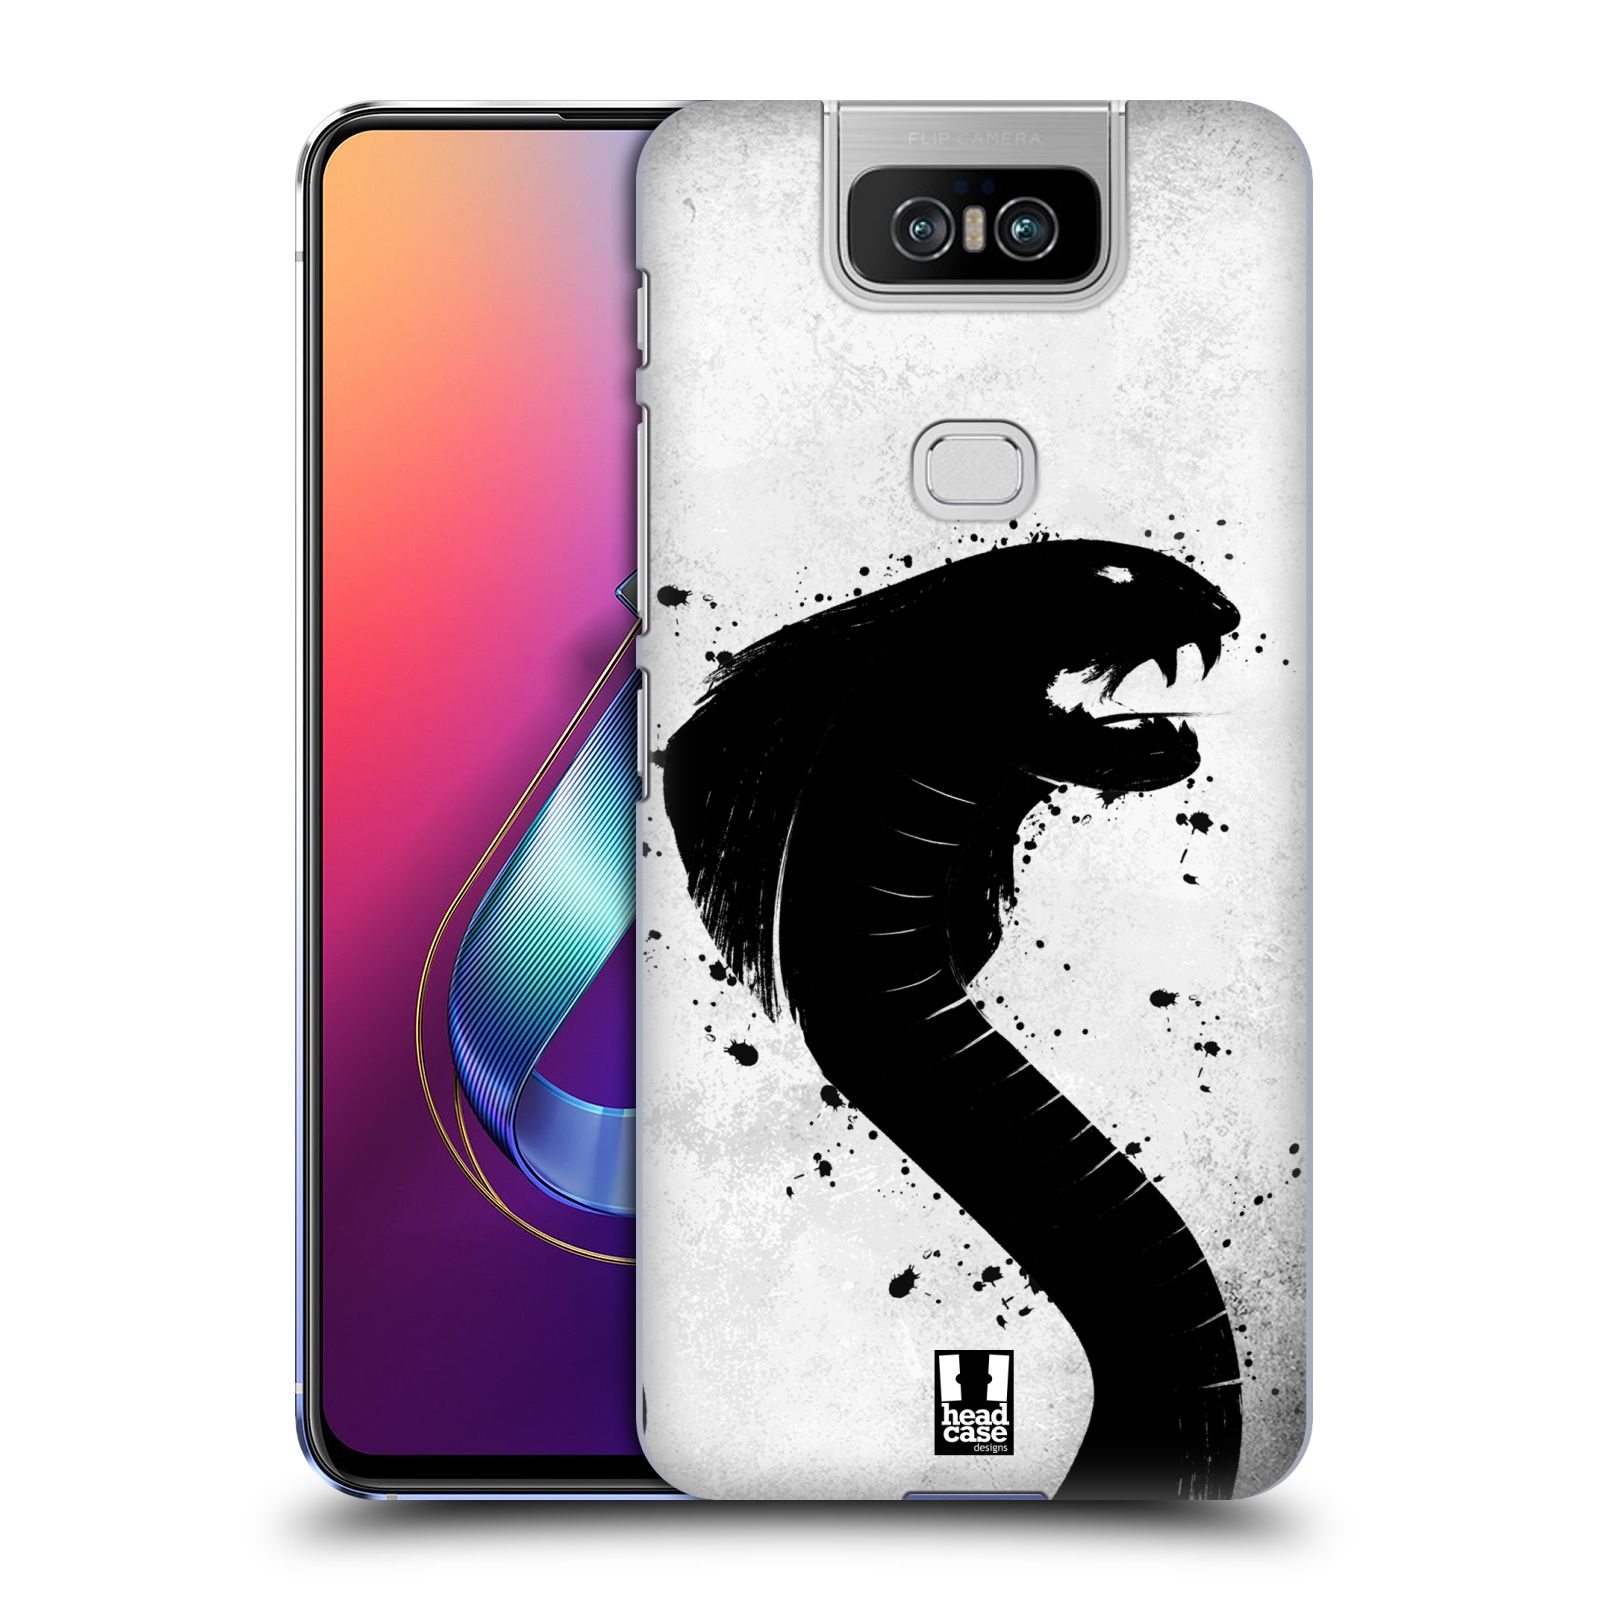 Pouzdro na mobil Asus Zenfone 6 ZS630KL - HEAD CASE - vzor Kresba tuš zvíře had kobra